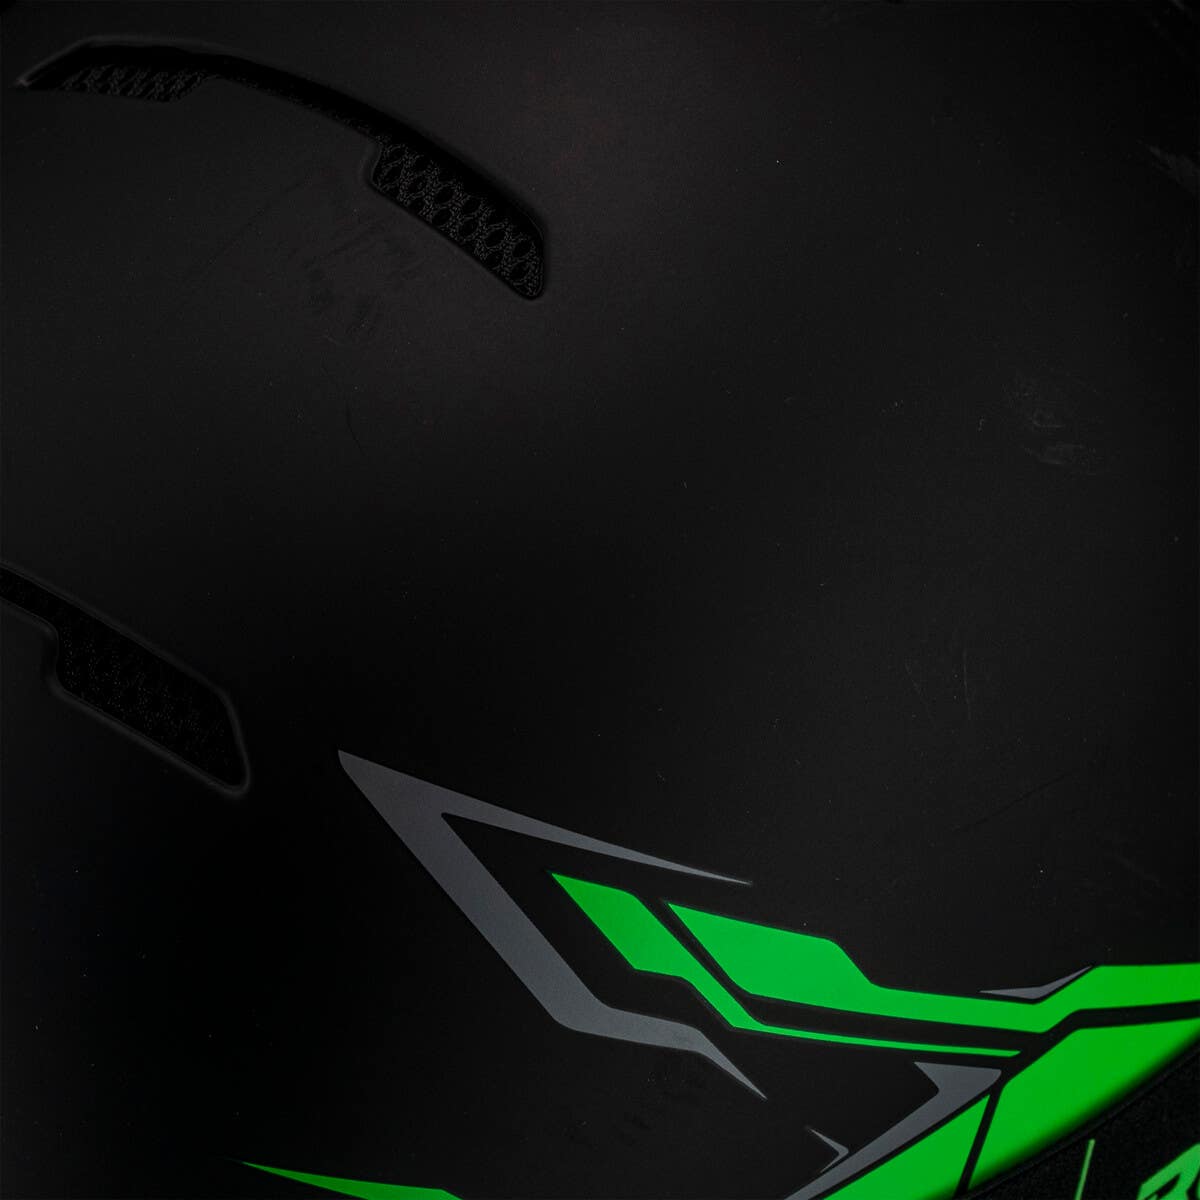 RG1-DX Helmet - Chaos Viper 19/20